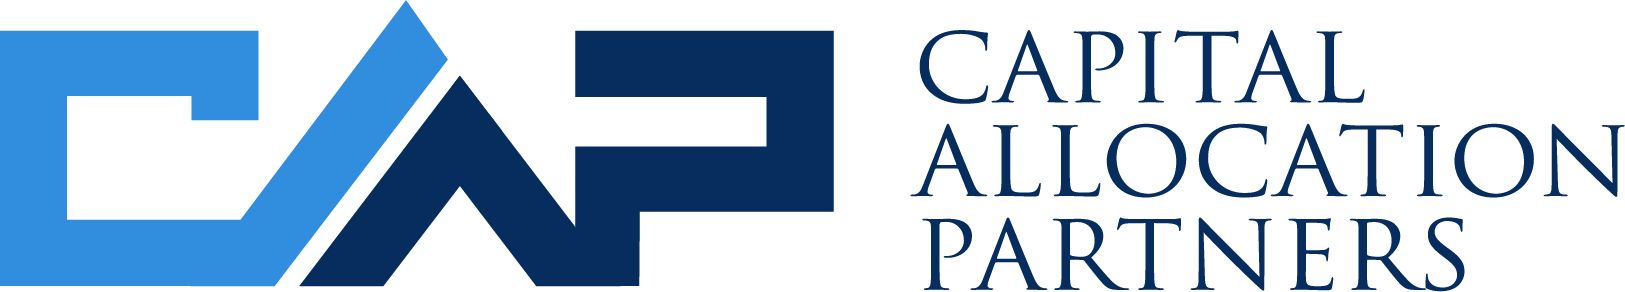 Capital Allocation Partners Logo